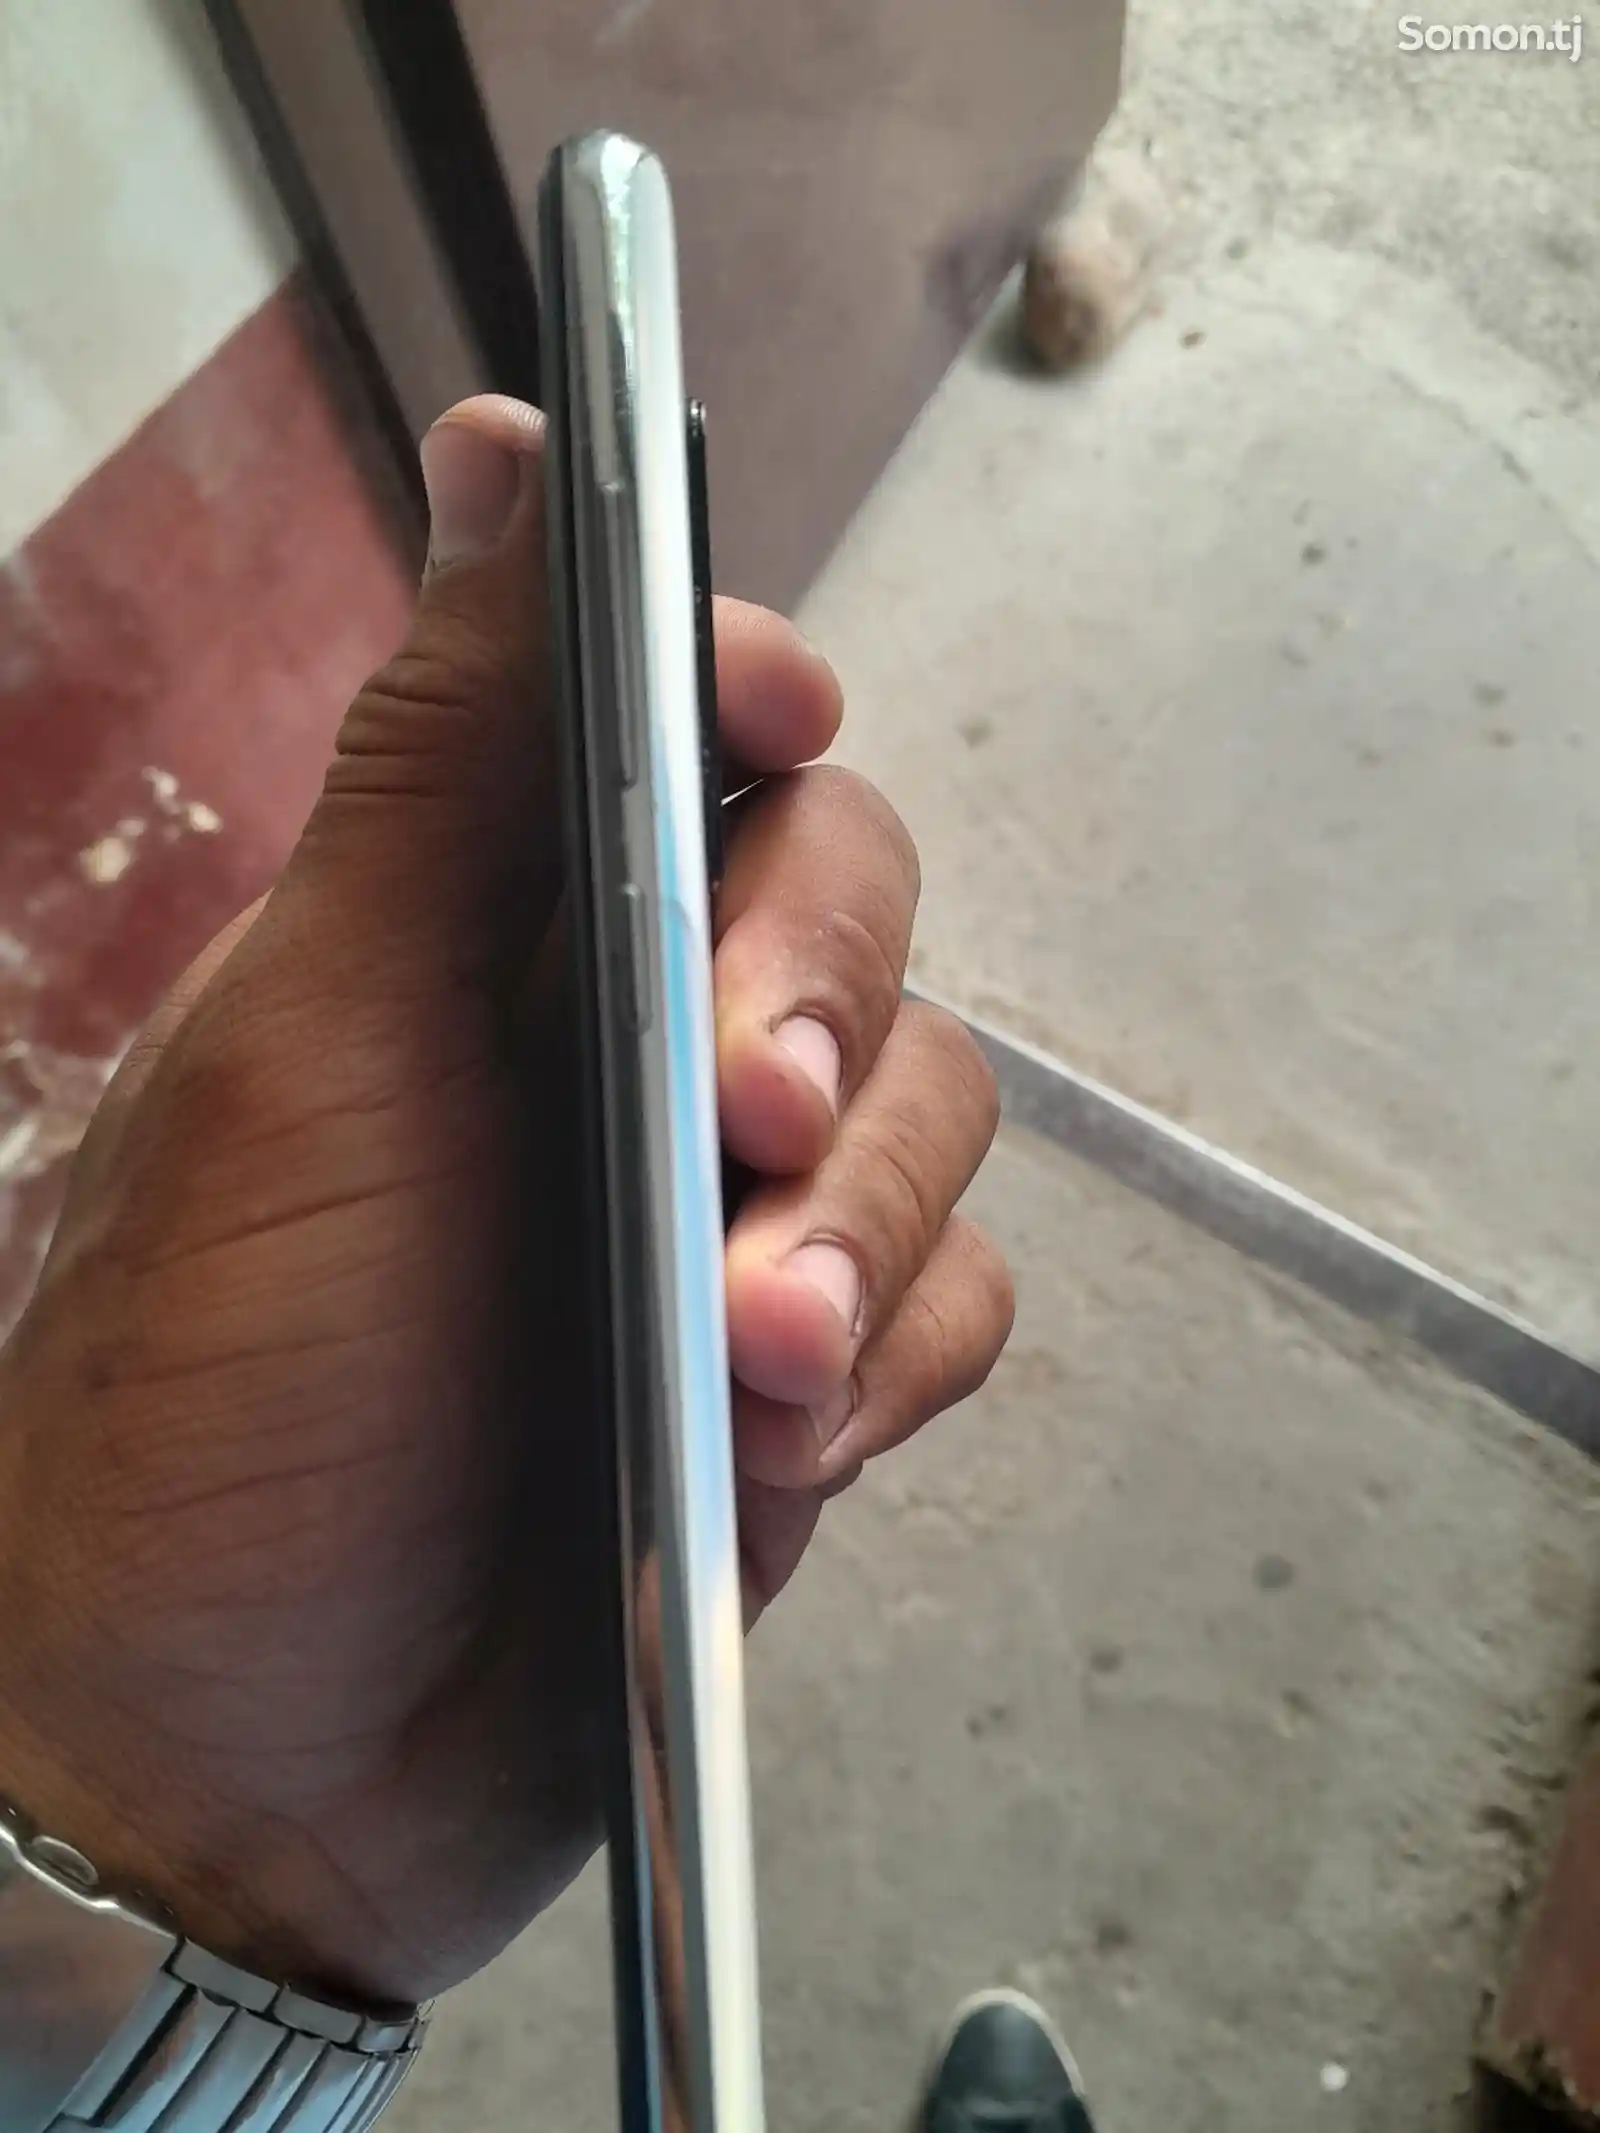 Xiaomi Redmi note 8 pro-1